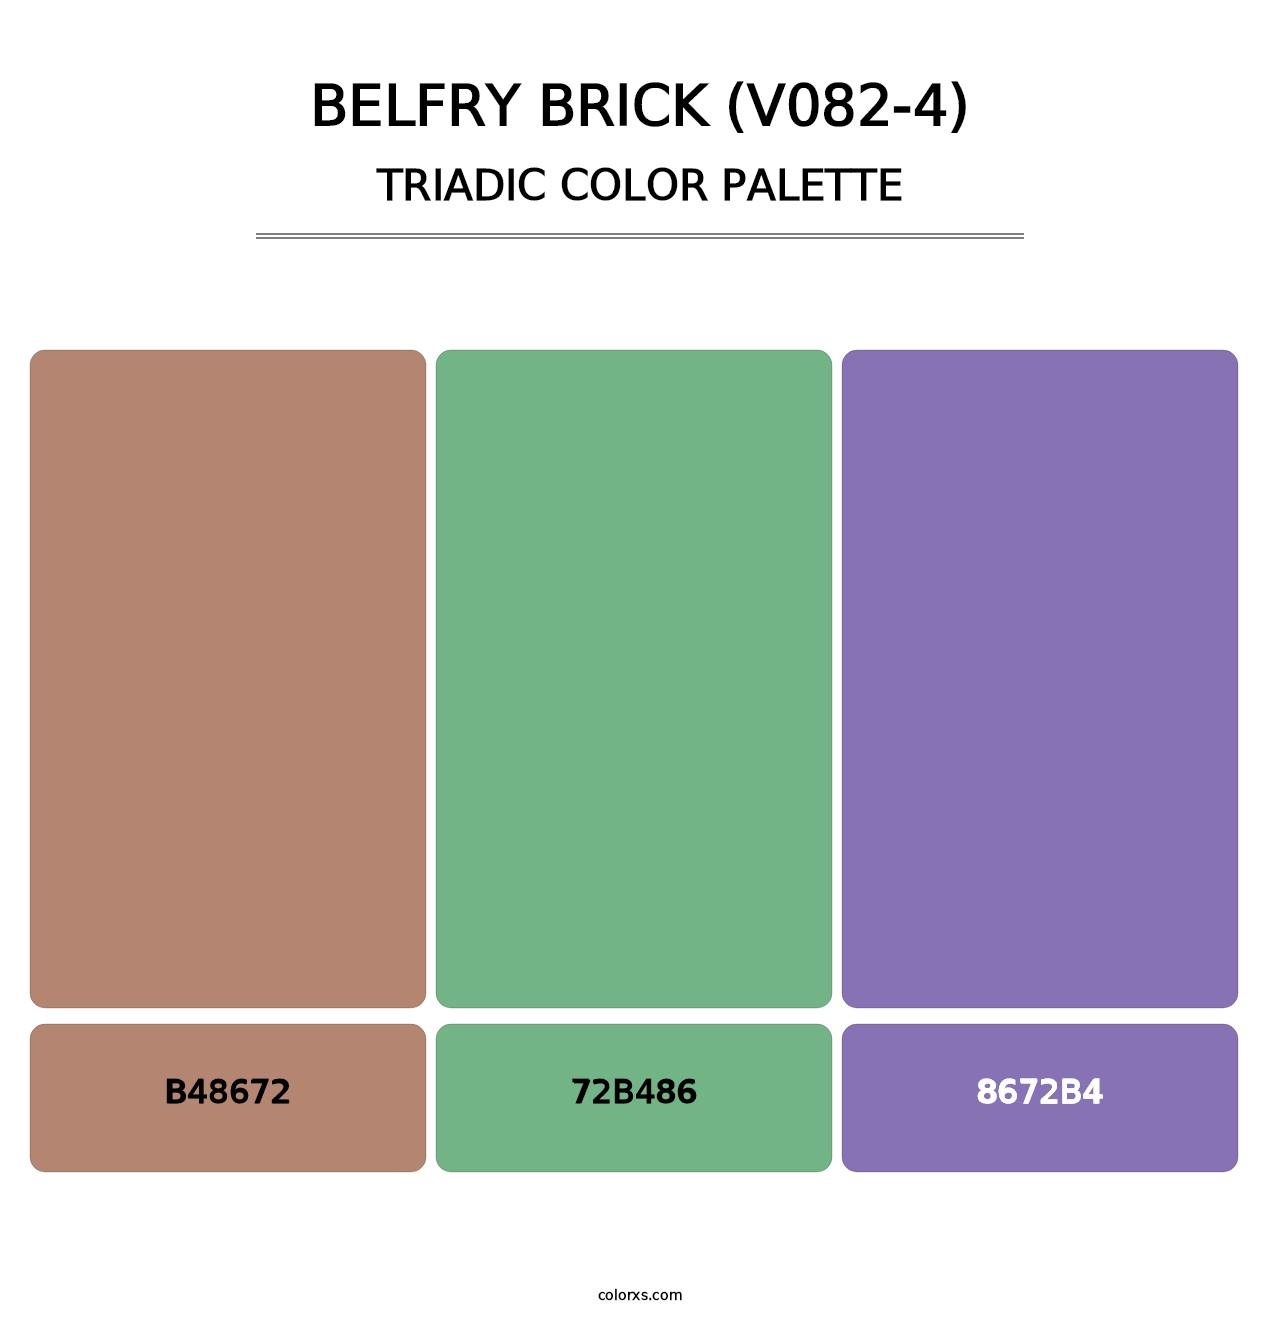 Belfry Brick (V082-4) - Triadic Color Palette